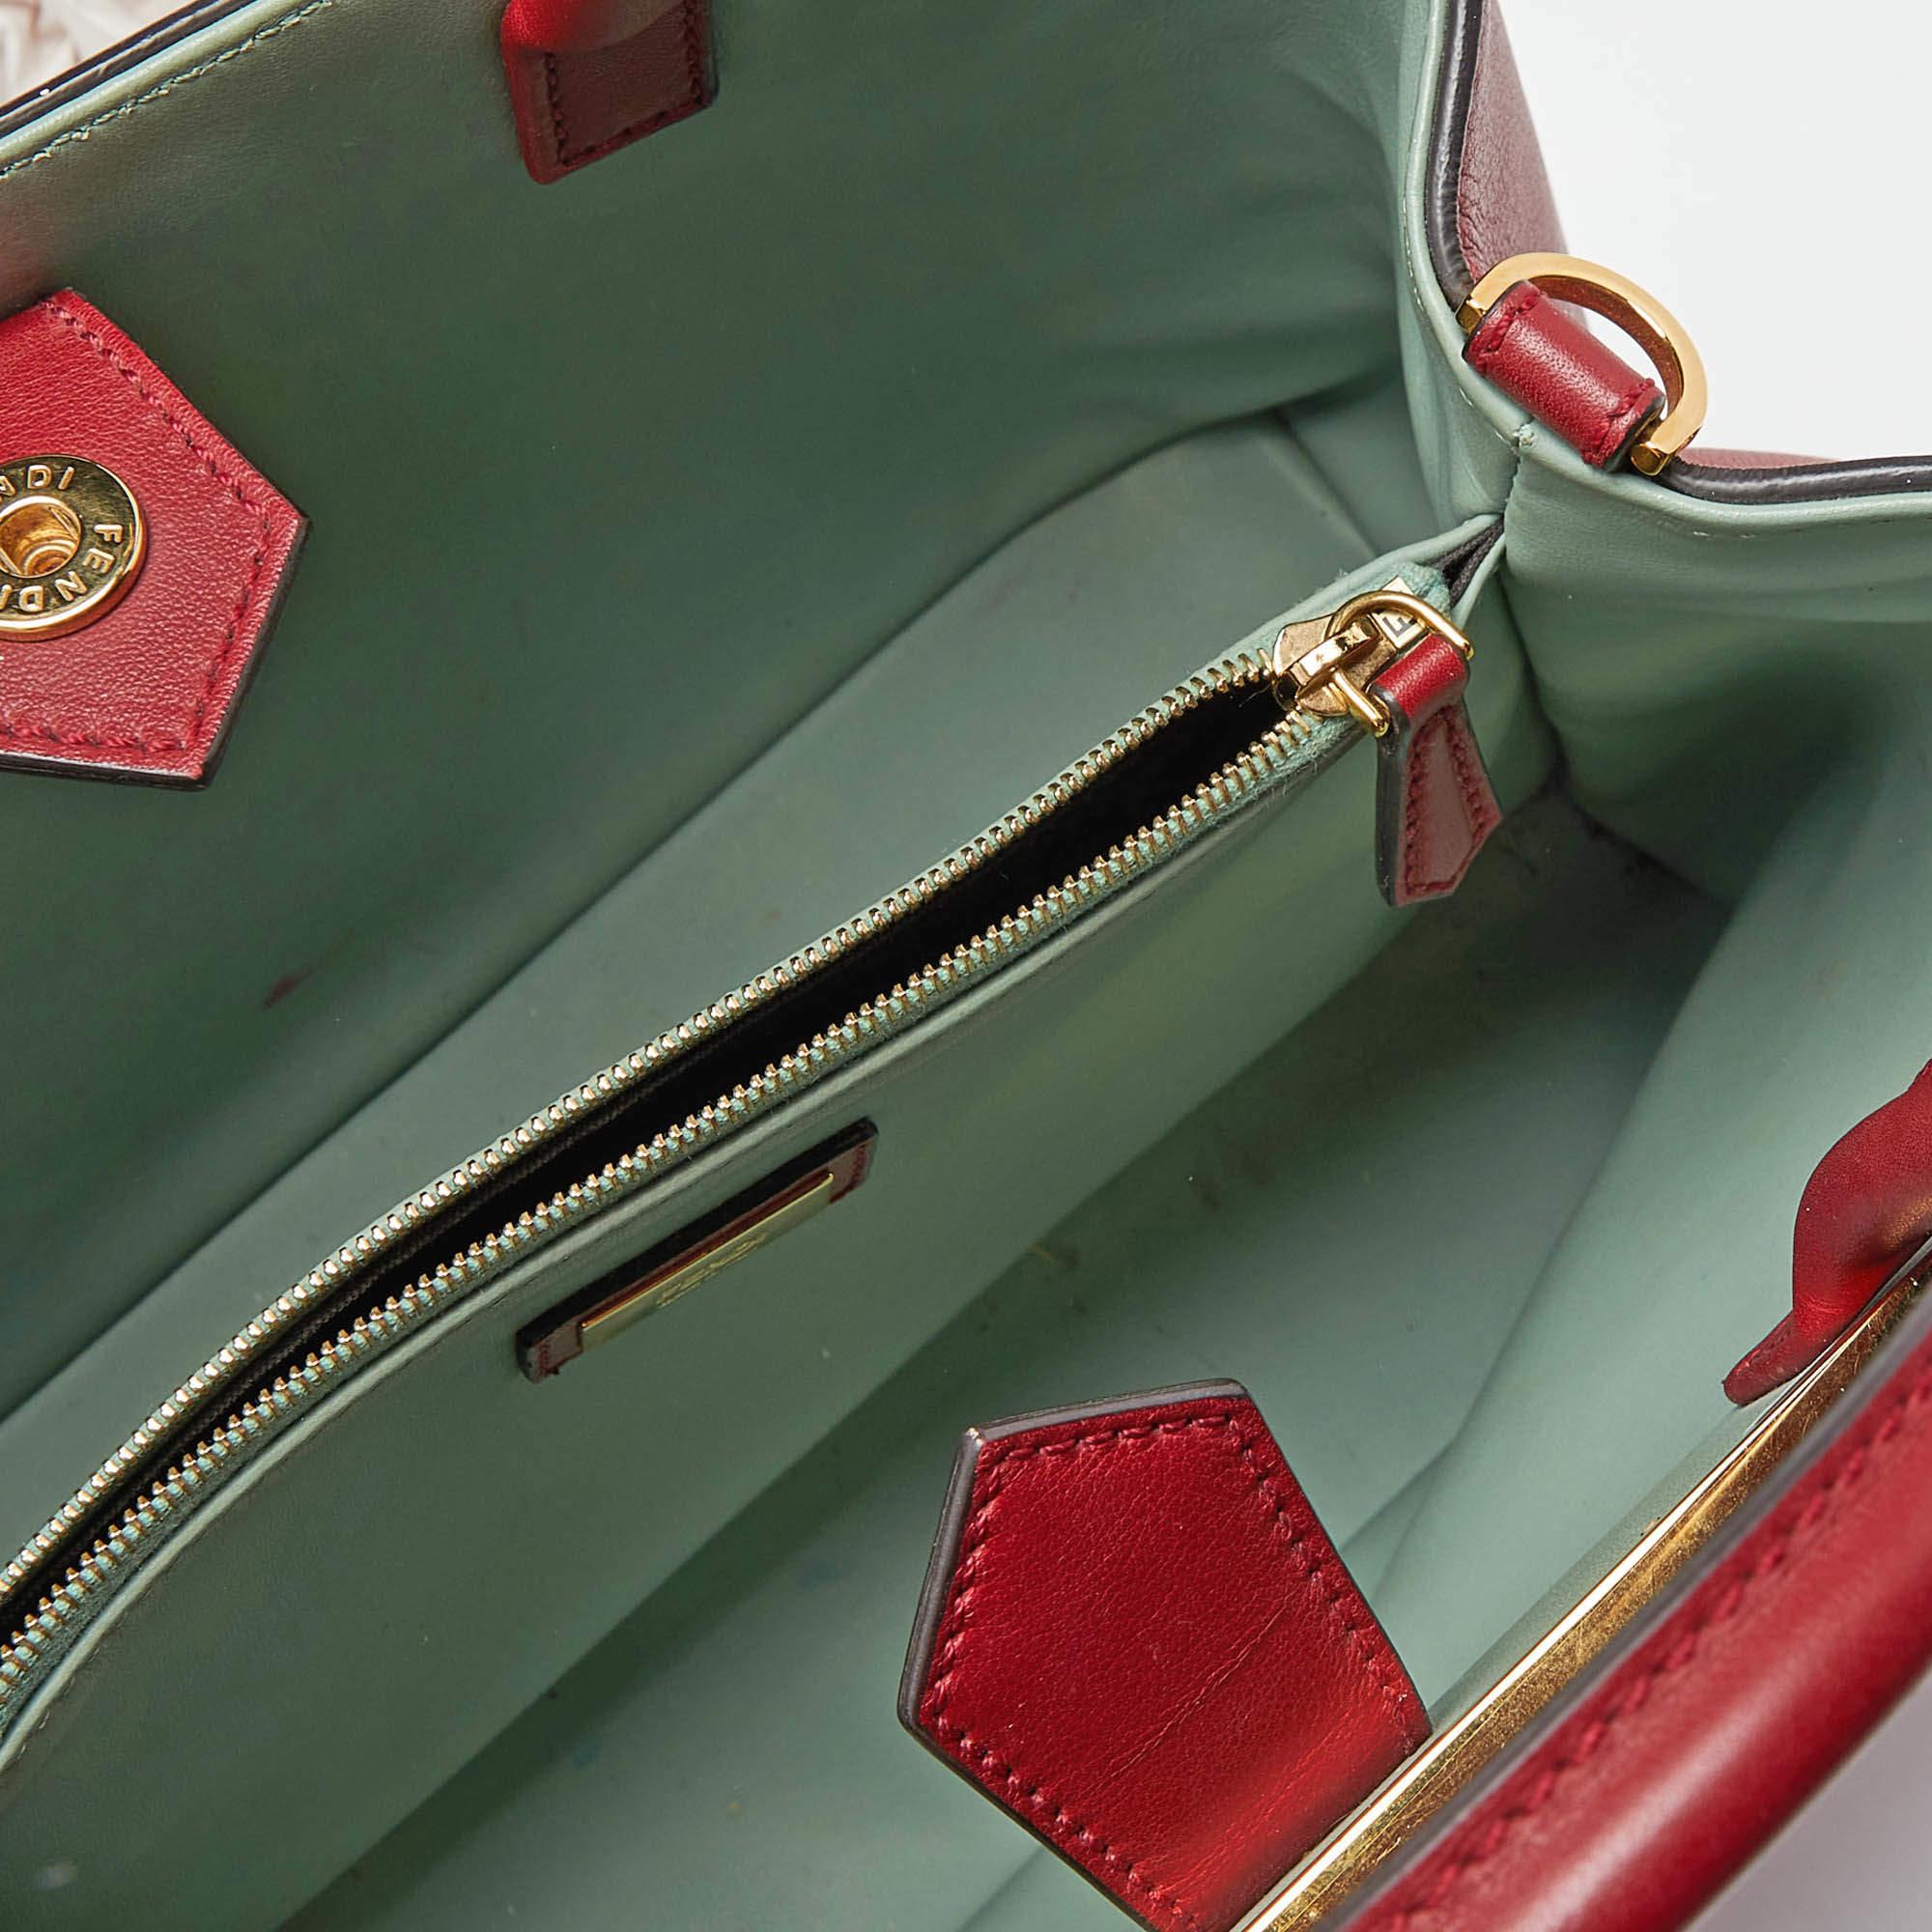 Fendi Red Leather Small 2Jours Tote In Good Condition For Sale In Dubai, Al Qouz 2